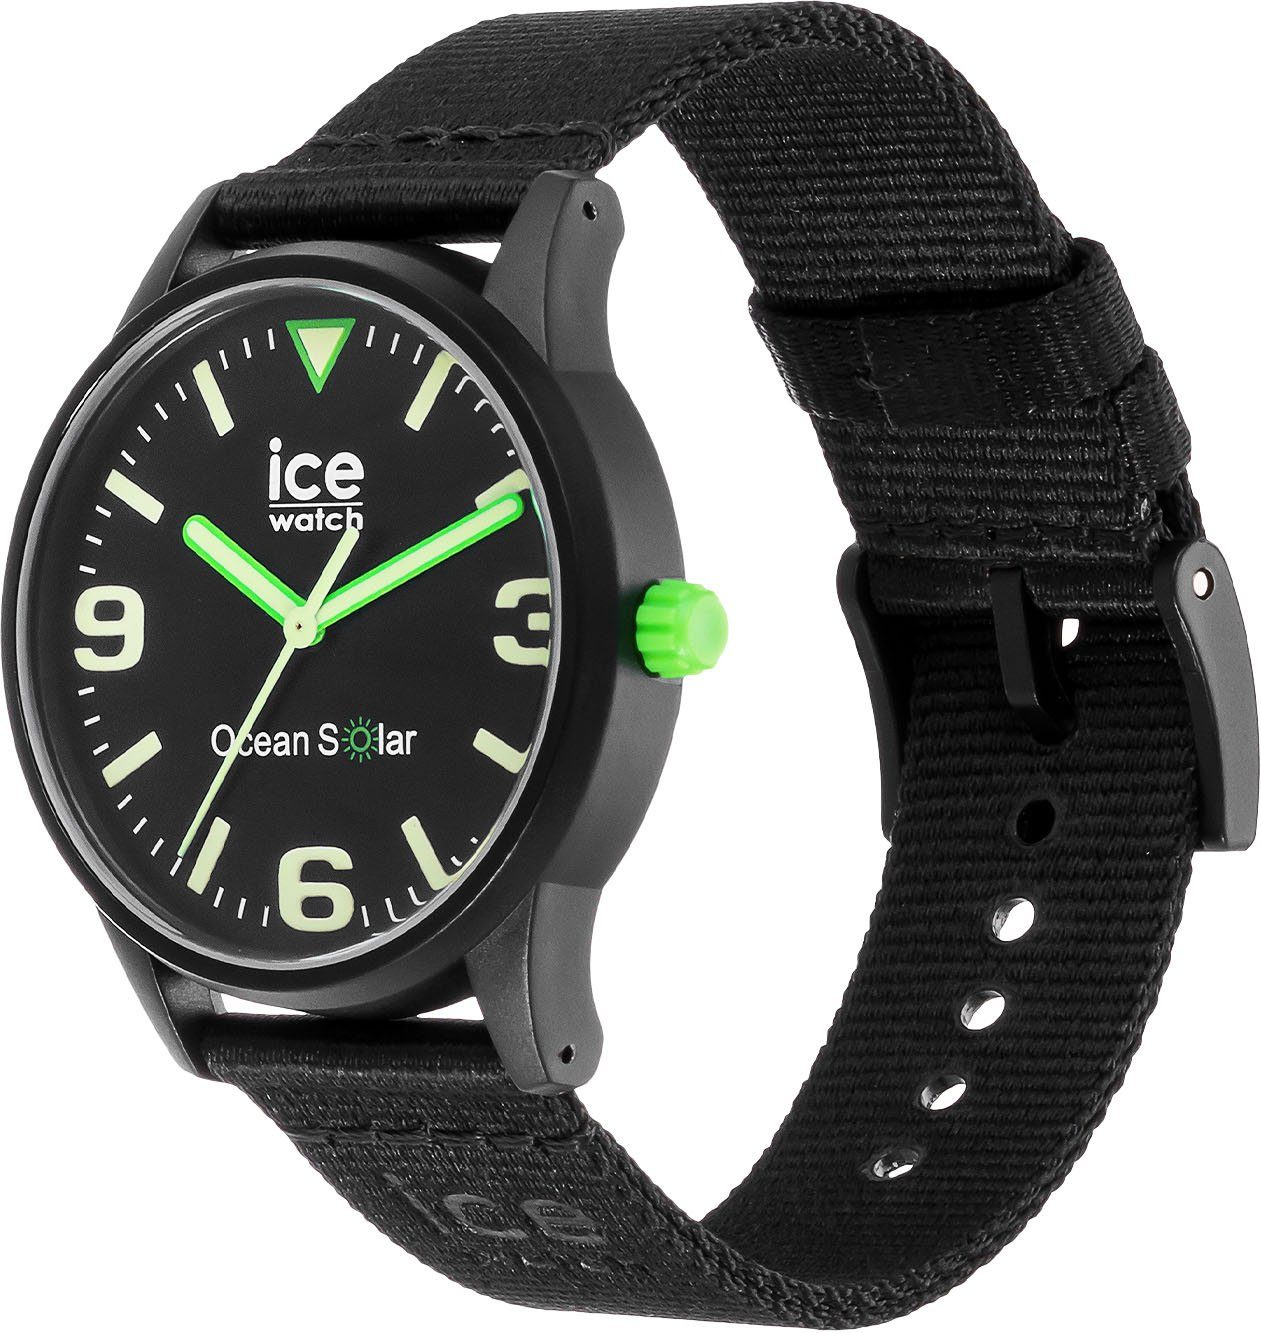 ocean ice-watch 019647 schwarz - SOLAR, ICE Solaruhr